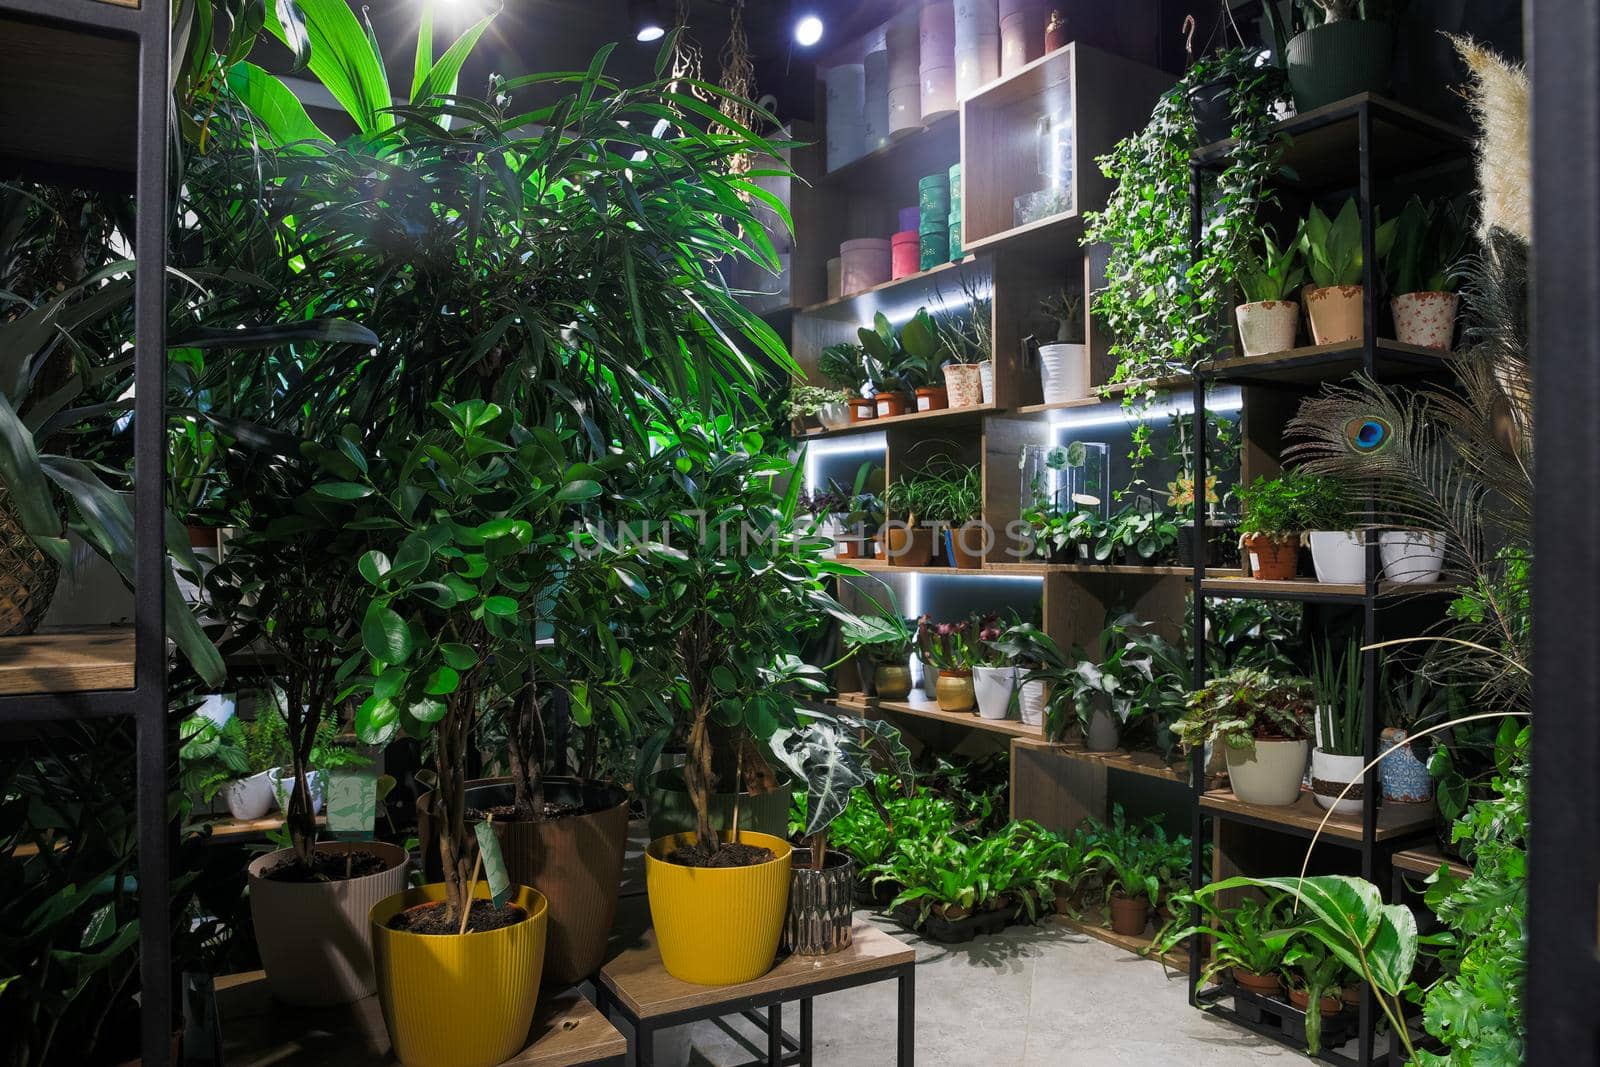 florist shop with premium exotic potted plants.